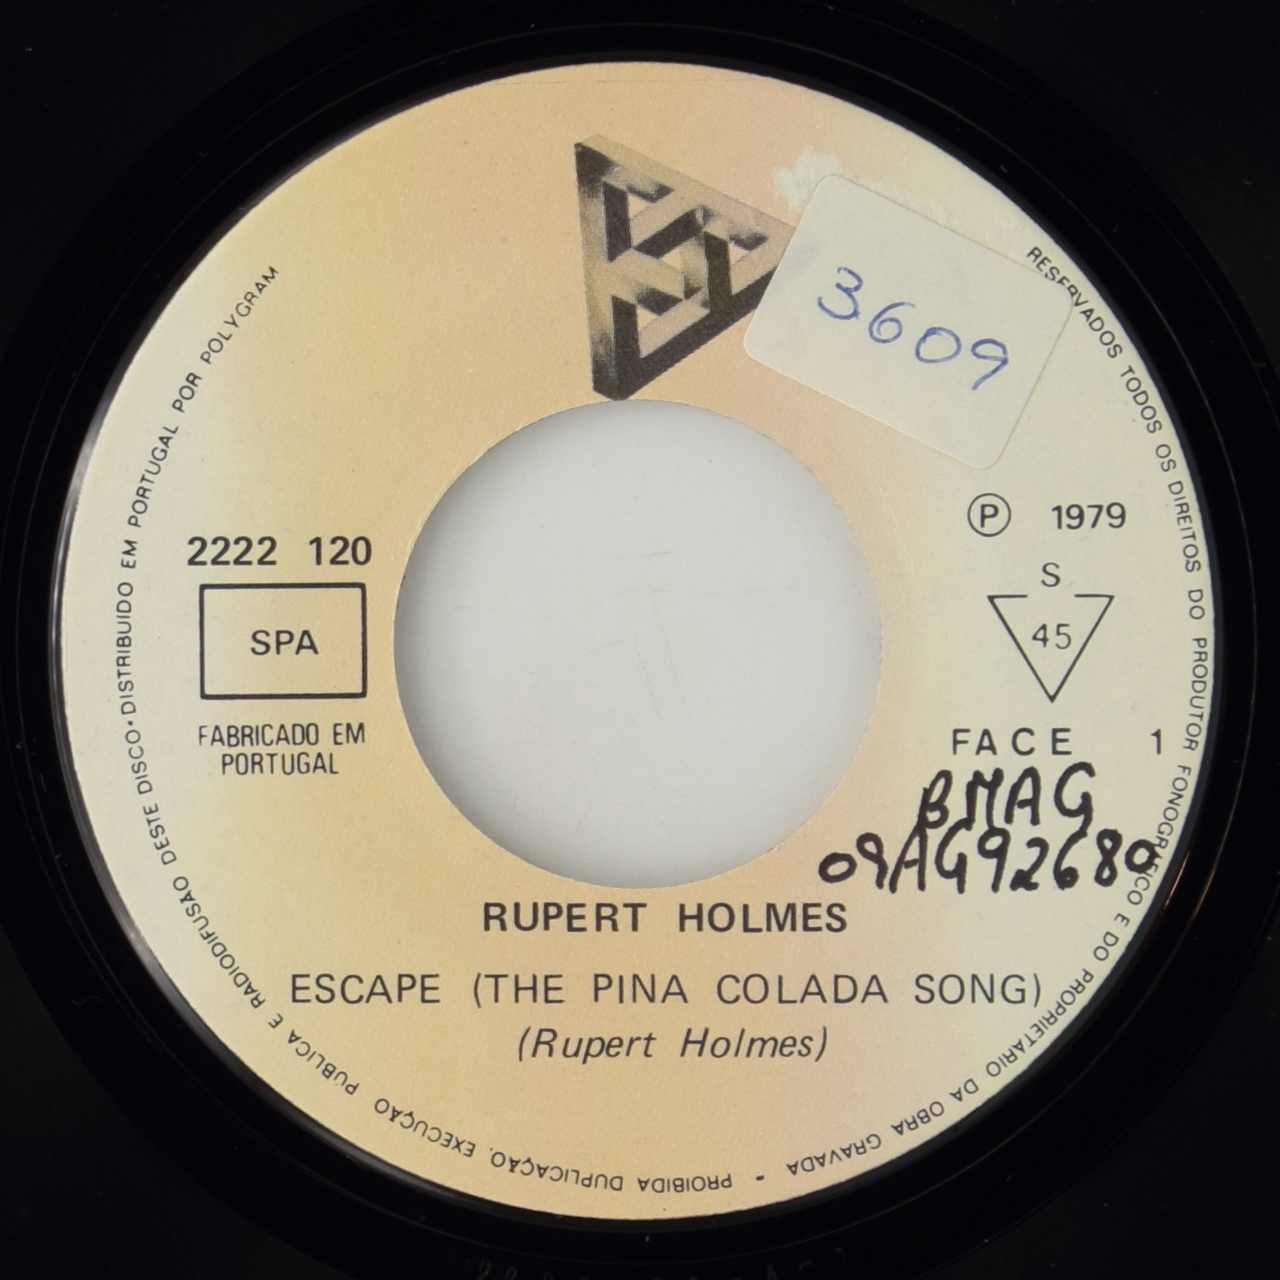 Escape (The Pina Colada Song)